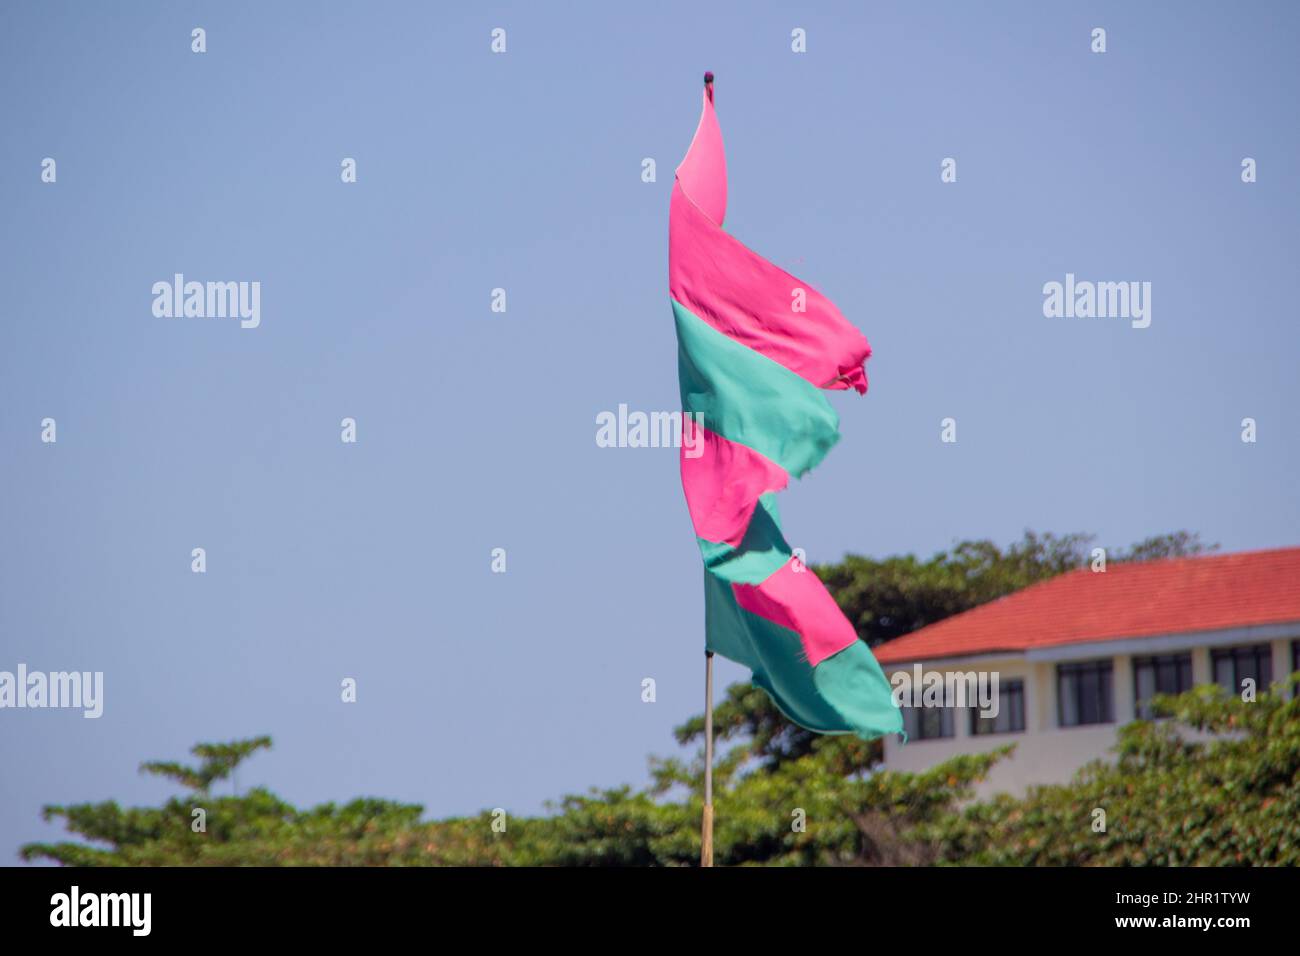 Drapeau vert et rose, en l'honneur de l'école de samba à la mangue, avec un ciel bleu en arrière-plan, à Rio de Janeiro, au Brésil. Banque D'Images